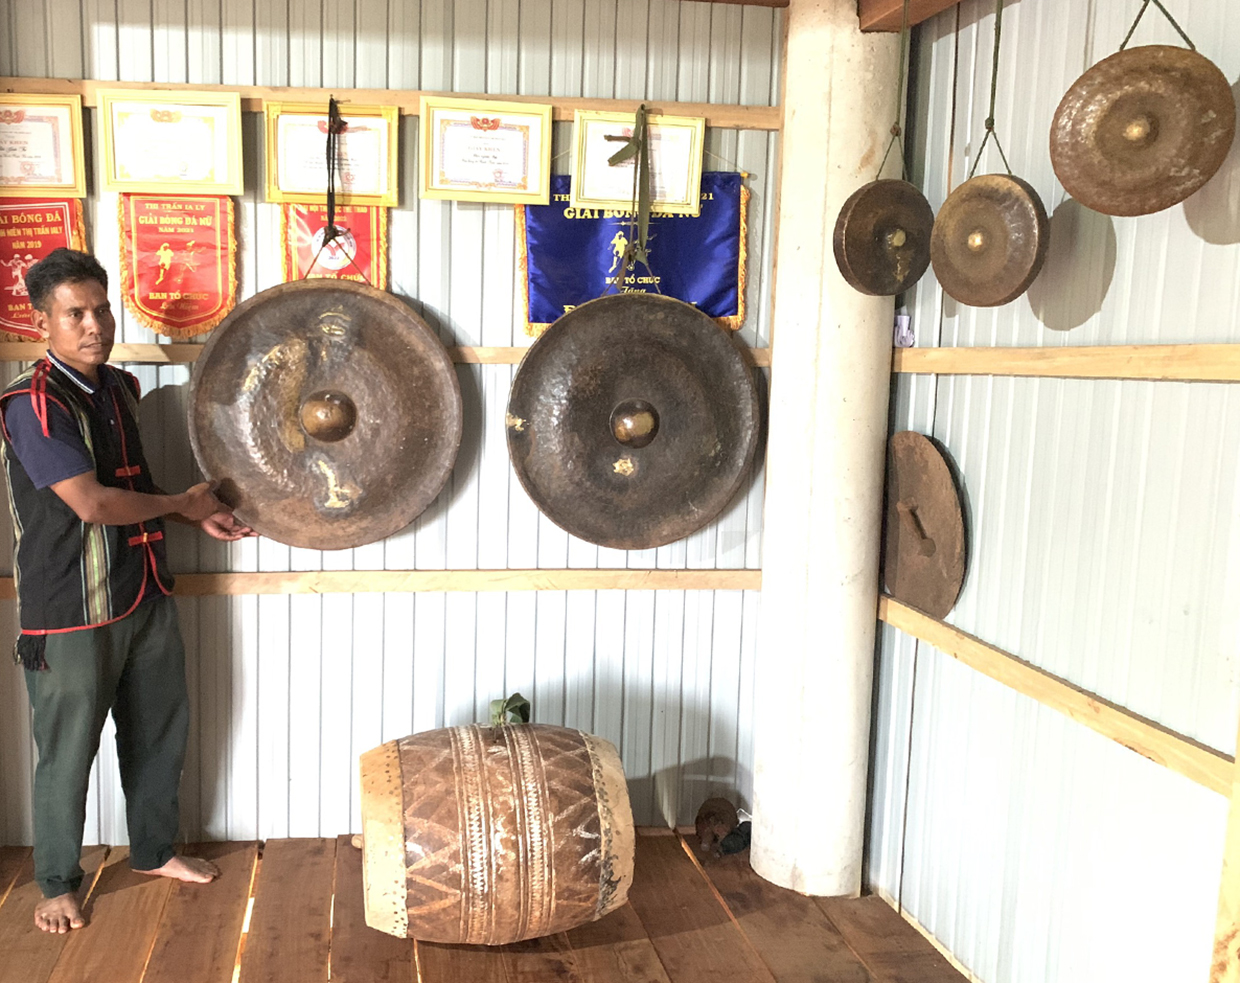  Bên trong nhà rông làng Mun được trưng bày các giấy khen thưởng,  bộ chiêng, trống. Ảnh: R'Ô HOK